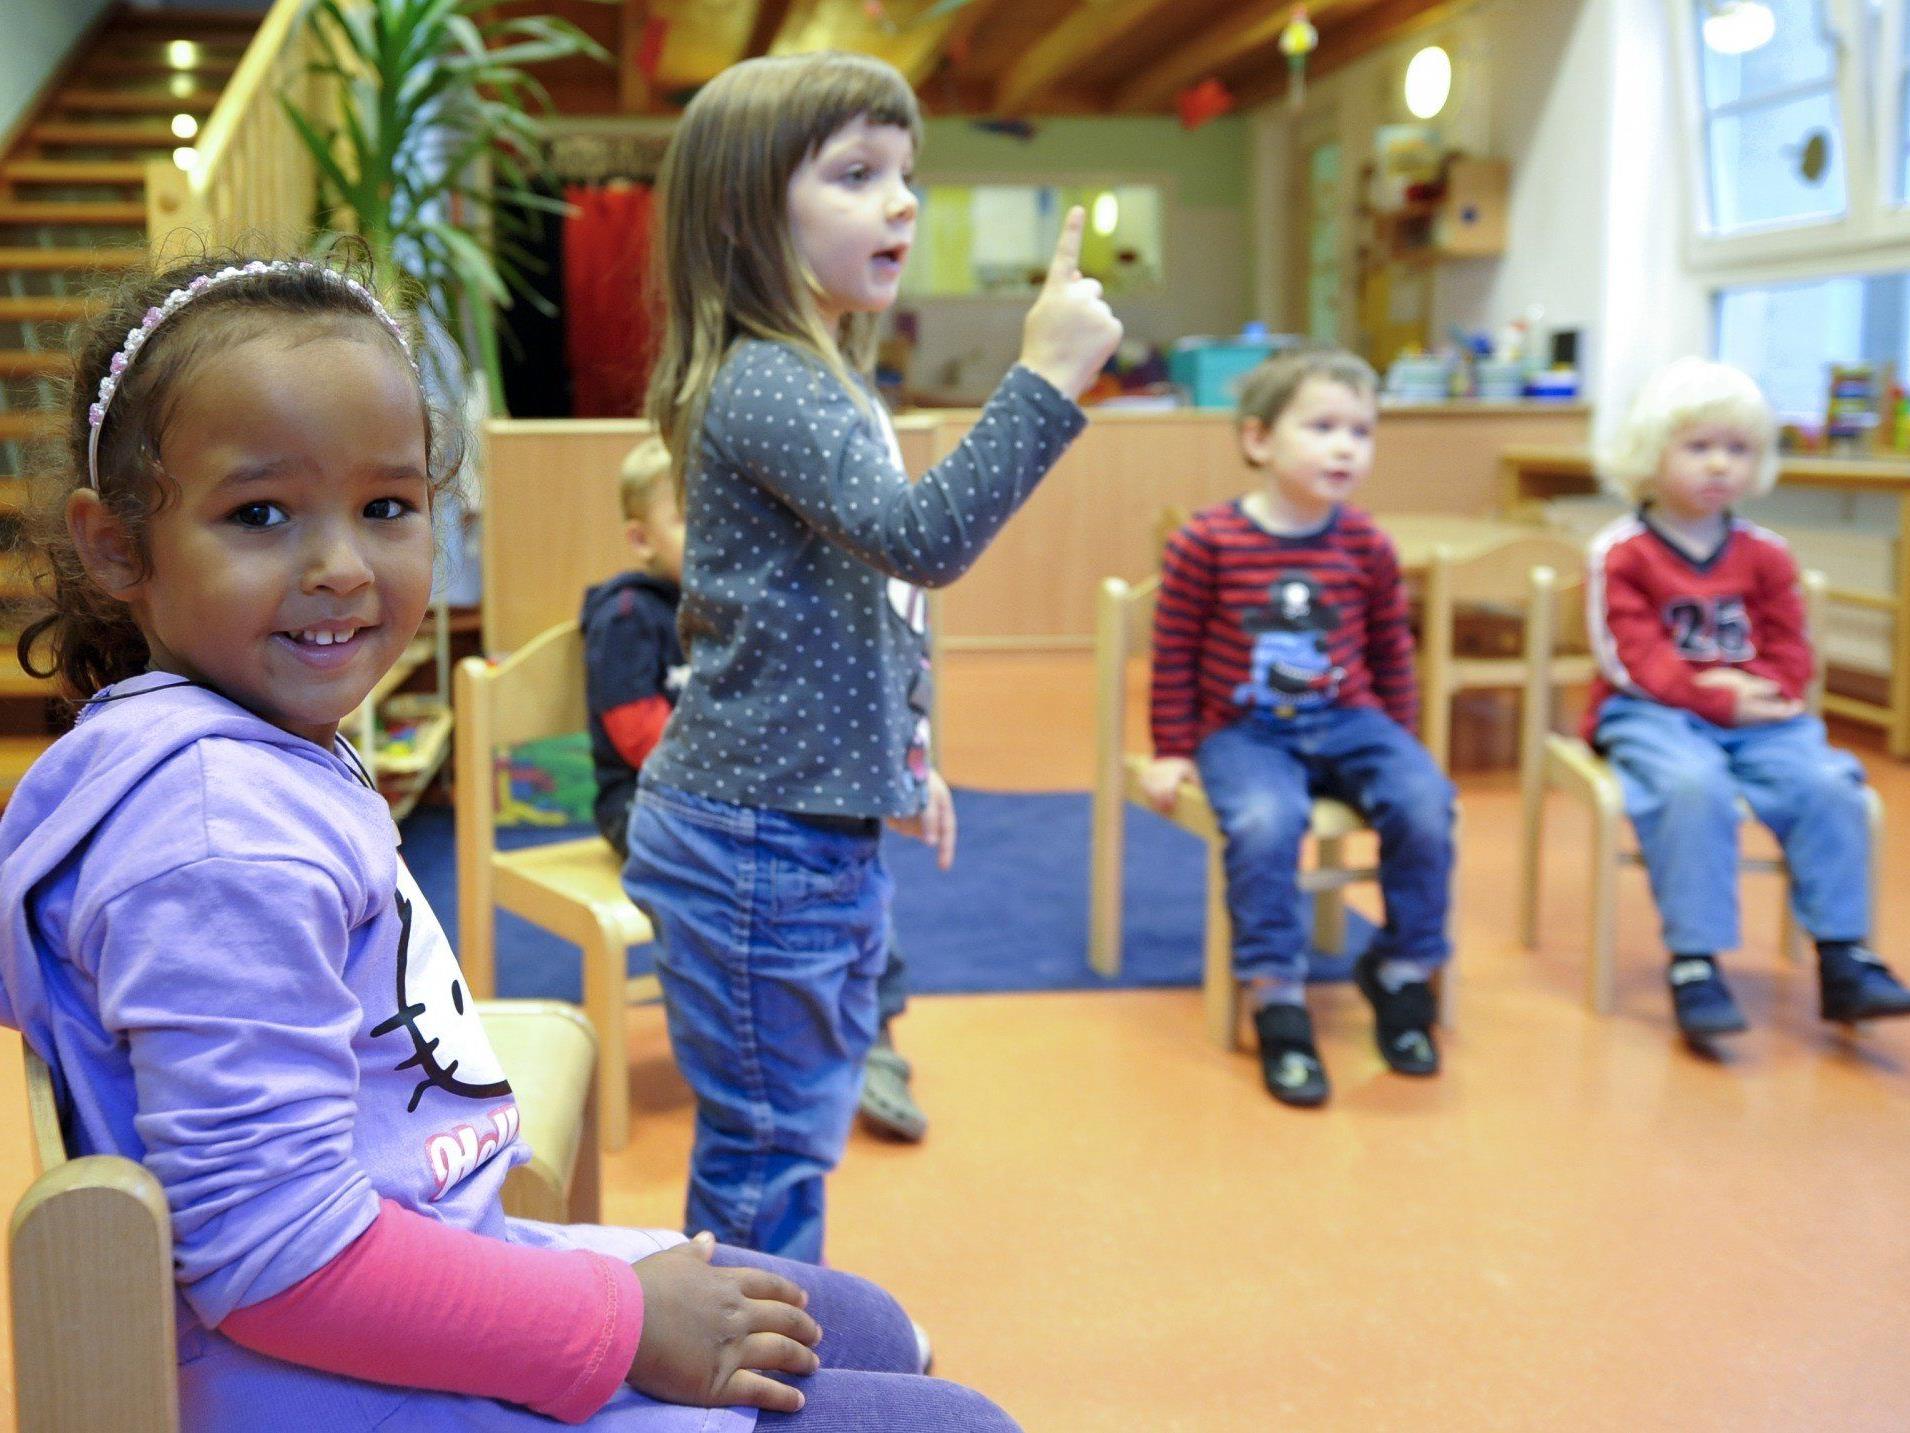 Die Kinderbetreuung als Deutschschule, so der Vorschlag der Logopädin.